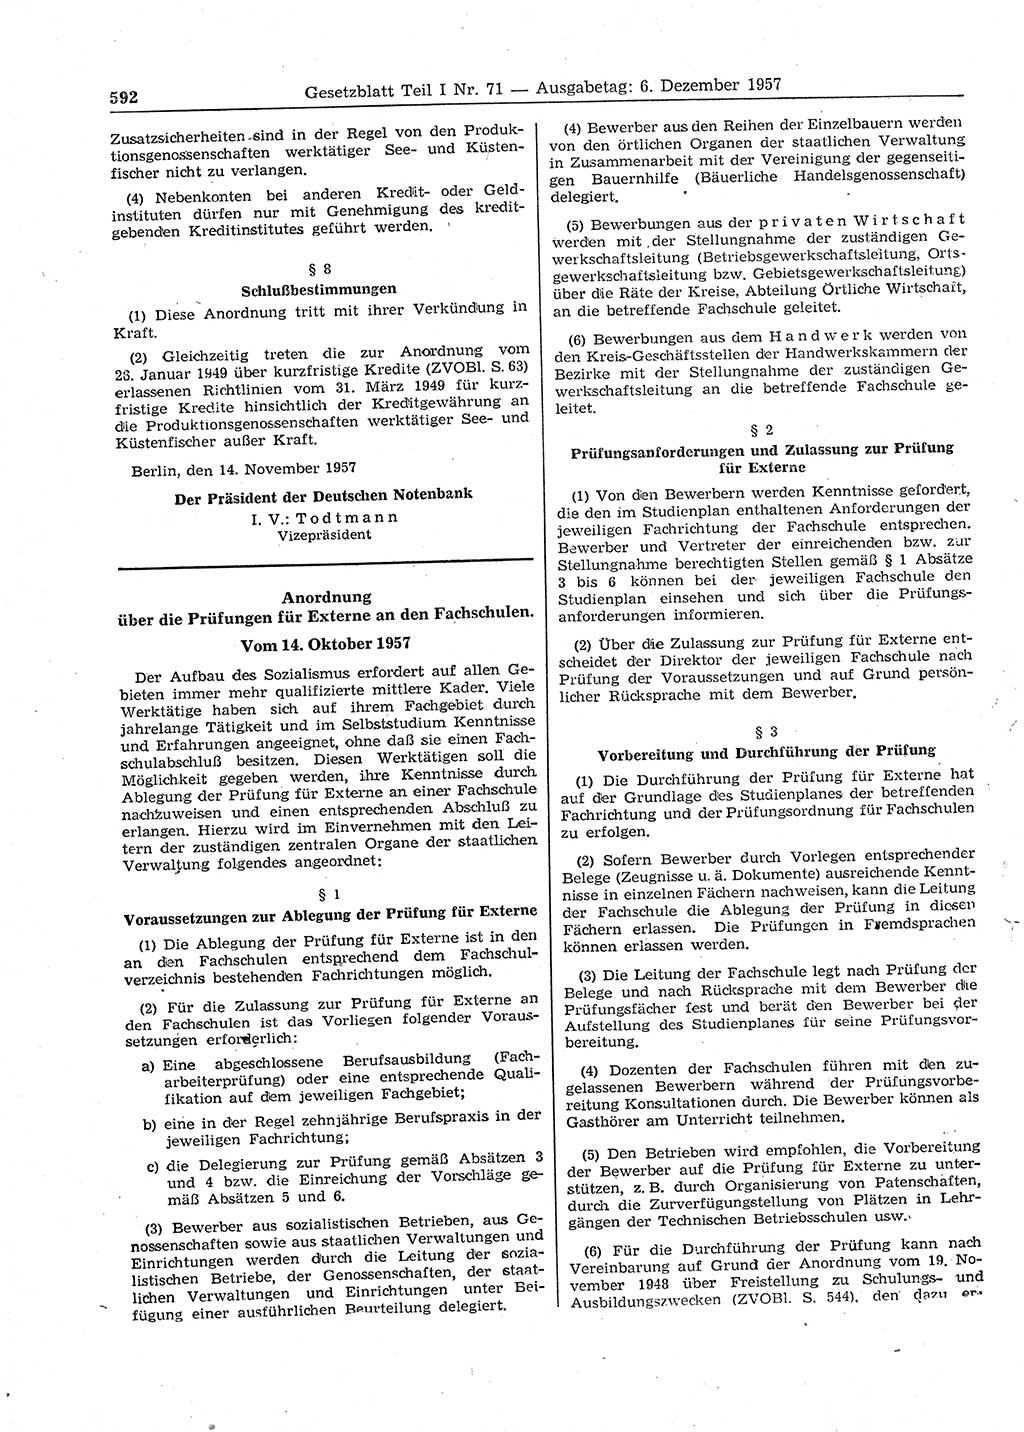 Gesetzblatt (GBl.) der Deutschen Demokratischen Republik (DDR) Teil Ⅰ 1957, Seite 592 (GBl. DDR Ⅰ 1957, S. 592)